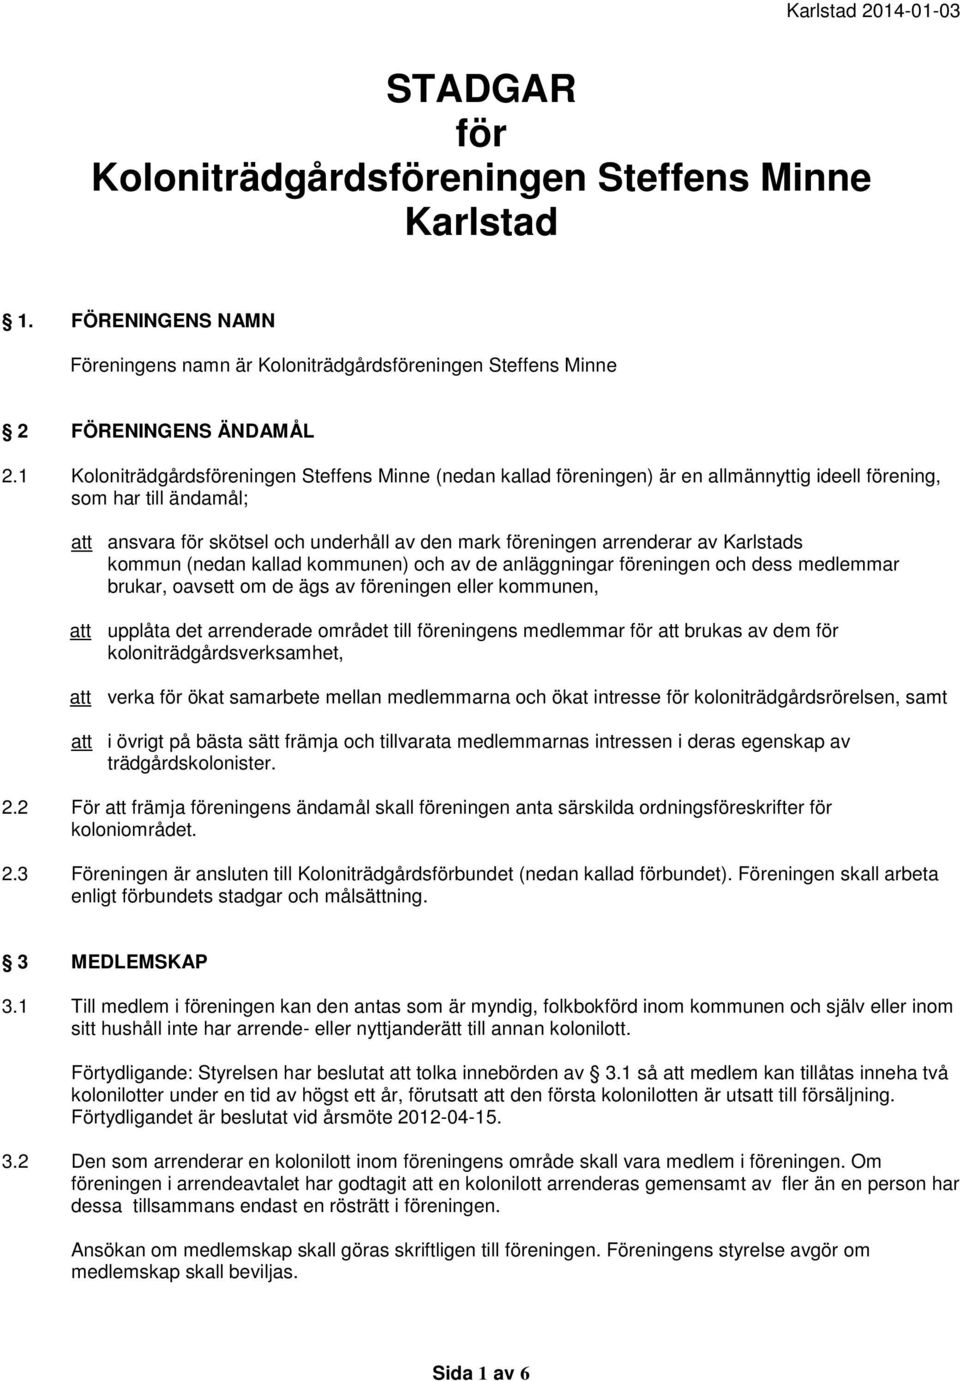 Karlstads kommun (nedan kallad kommunen) och av de anläggningar föreningen och dess medlemmar brukar, oavsett om de ägs av föreningen eller kommunen, upplåta det arrenderade området till föreningens